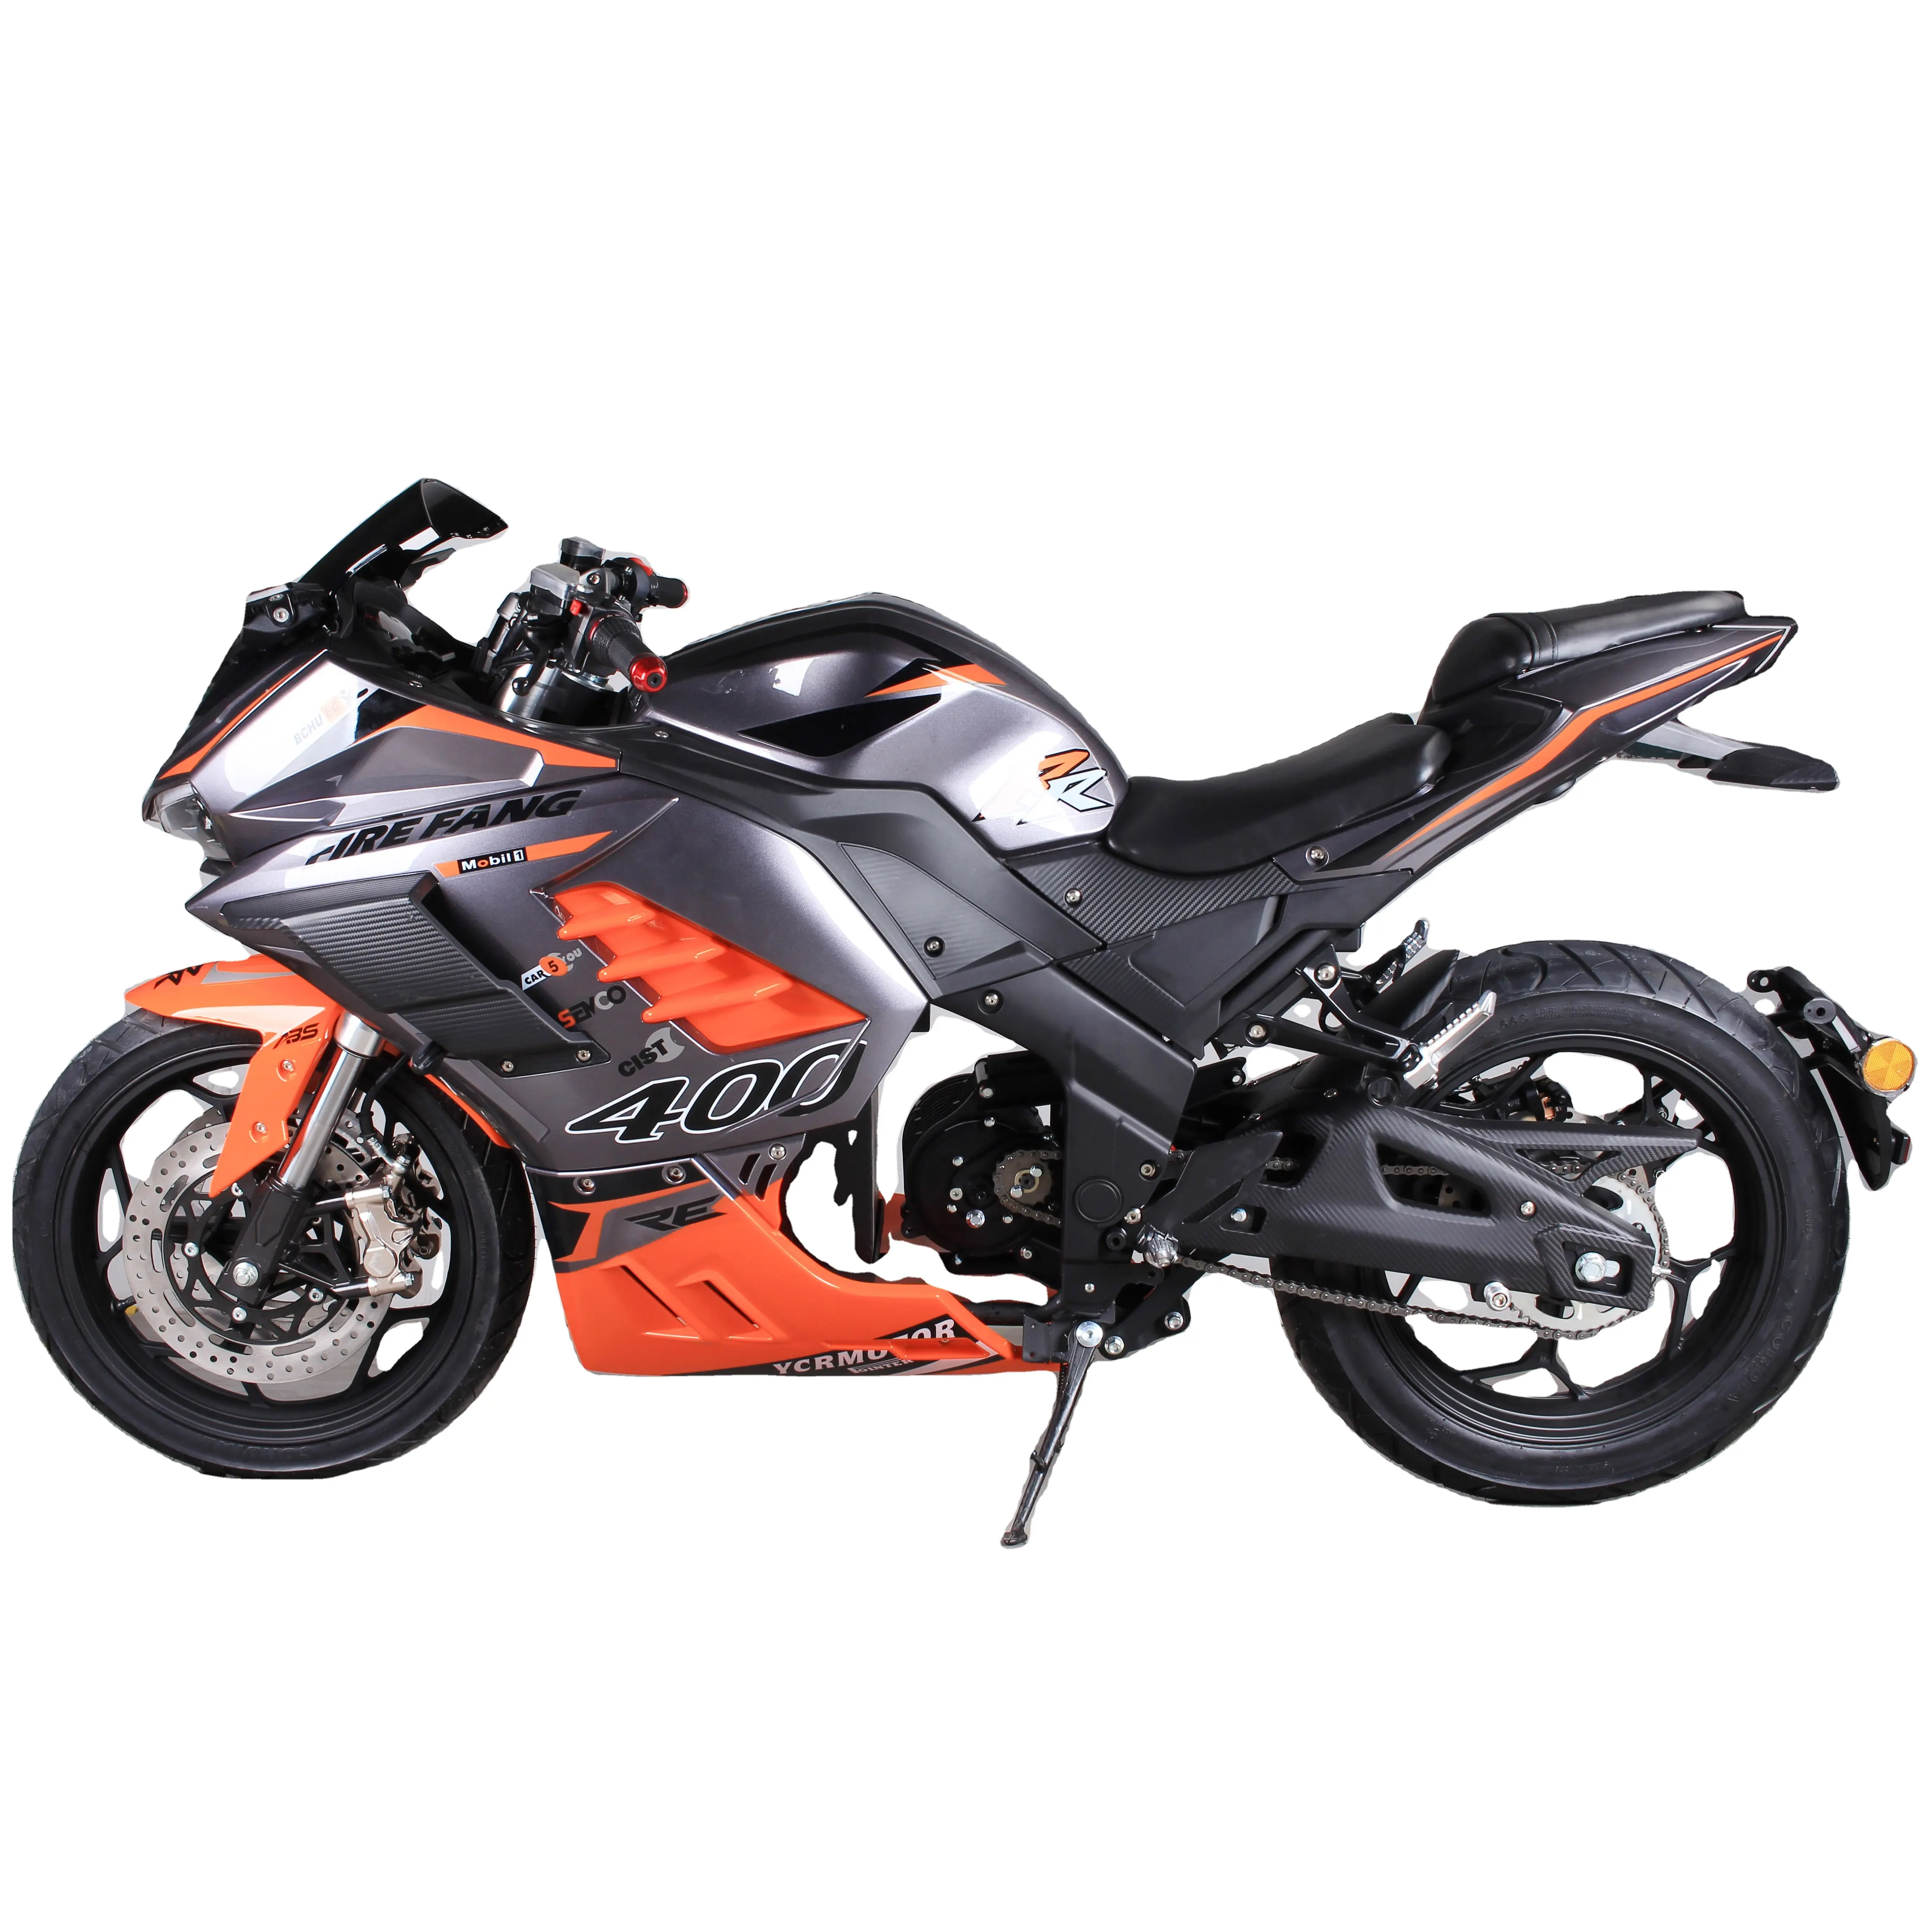 공장 도매 스즈키 오토바이 1000cc 레이싱 ckd 전기 오토바이 저렴한 레이싱 오토바이